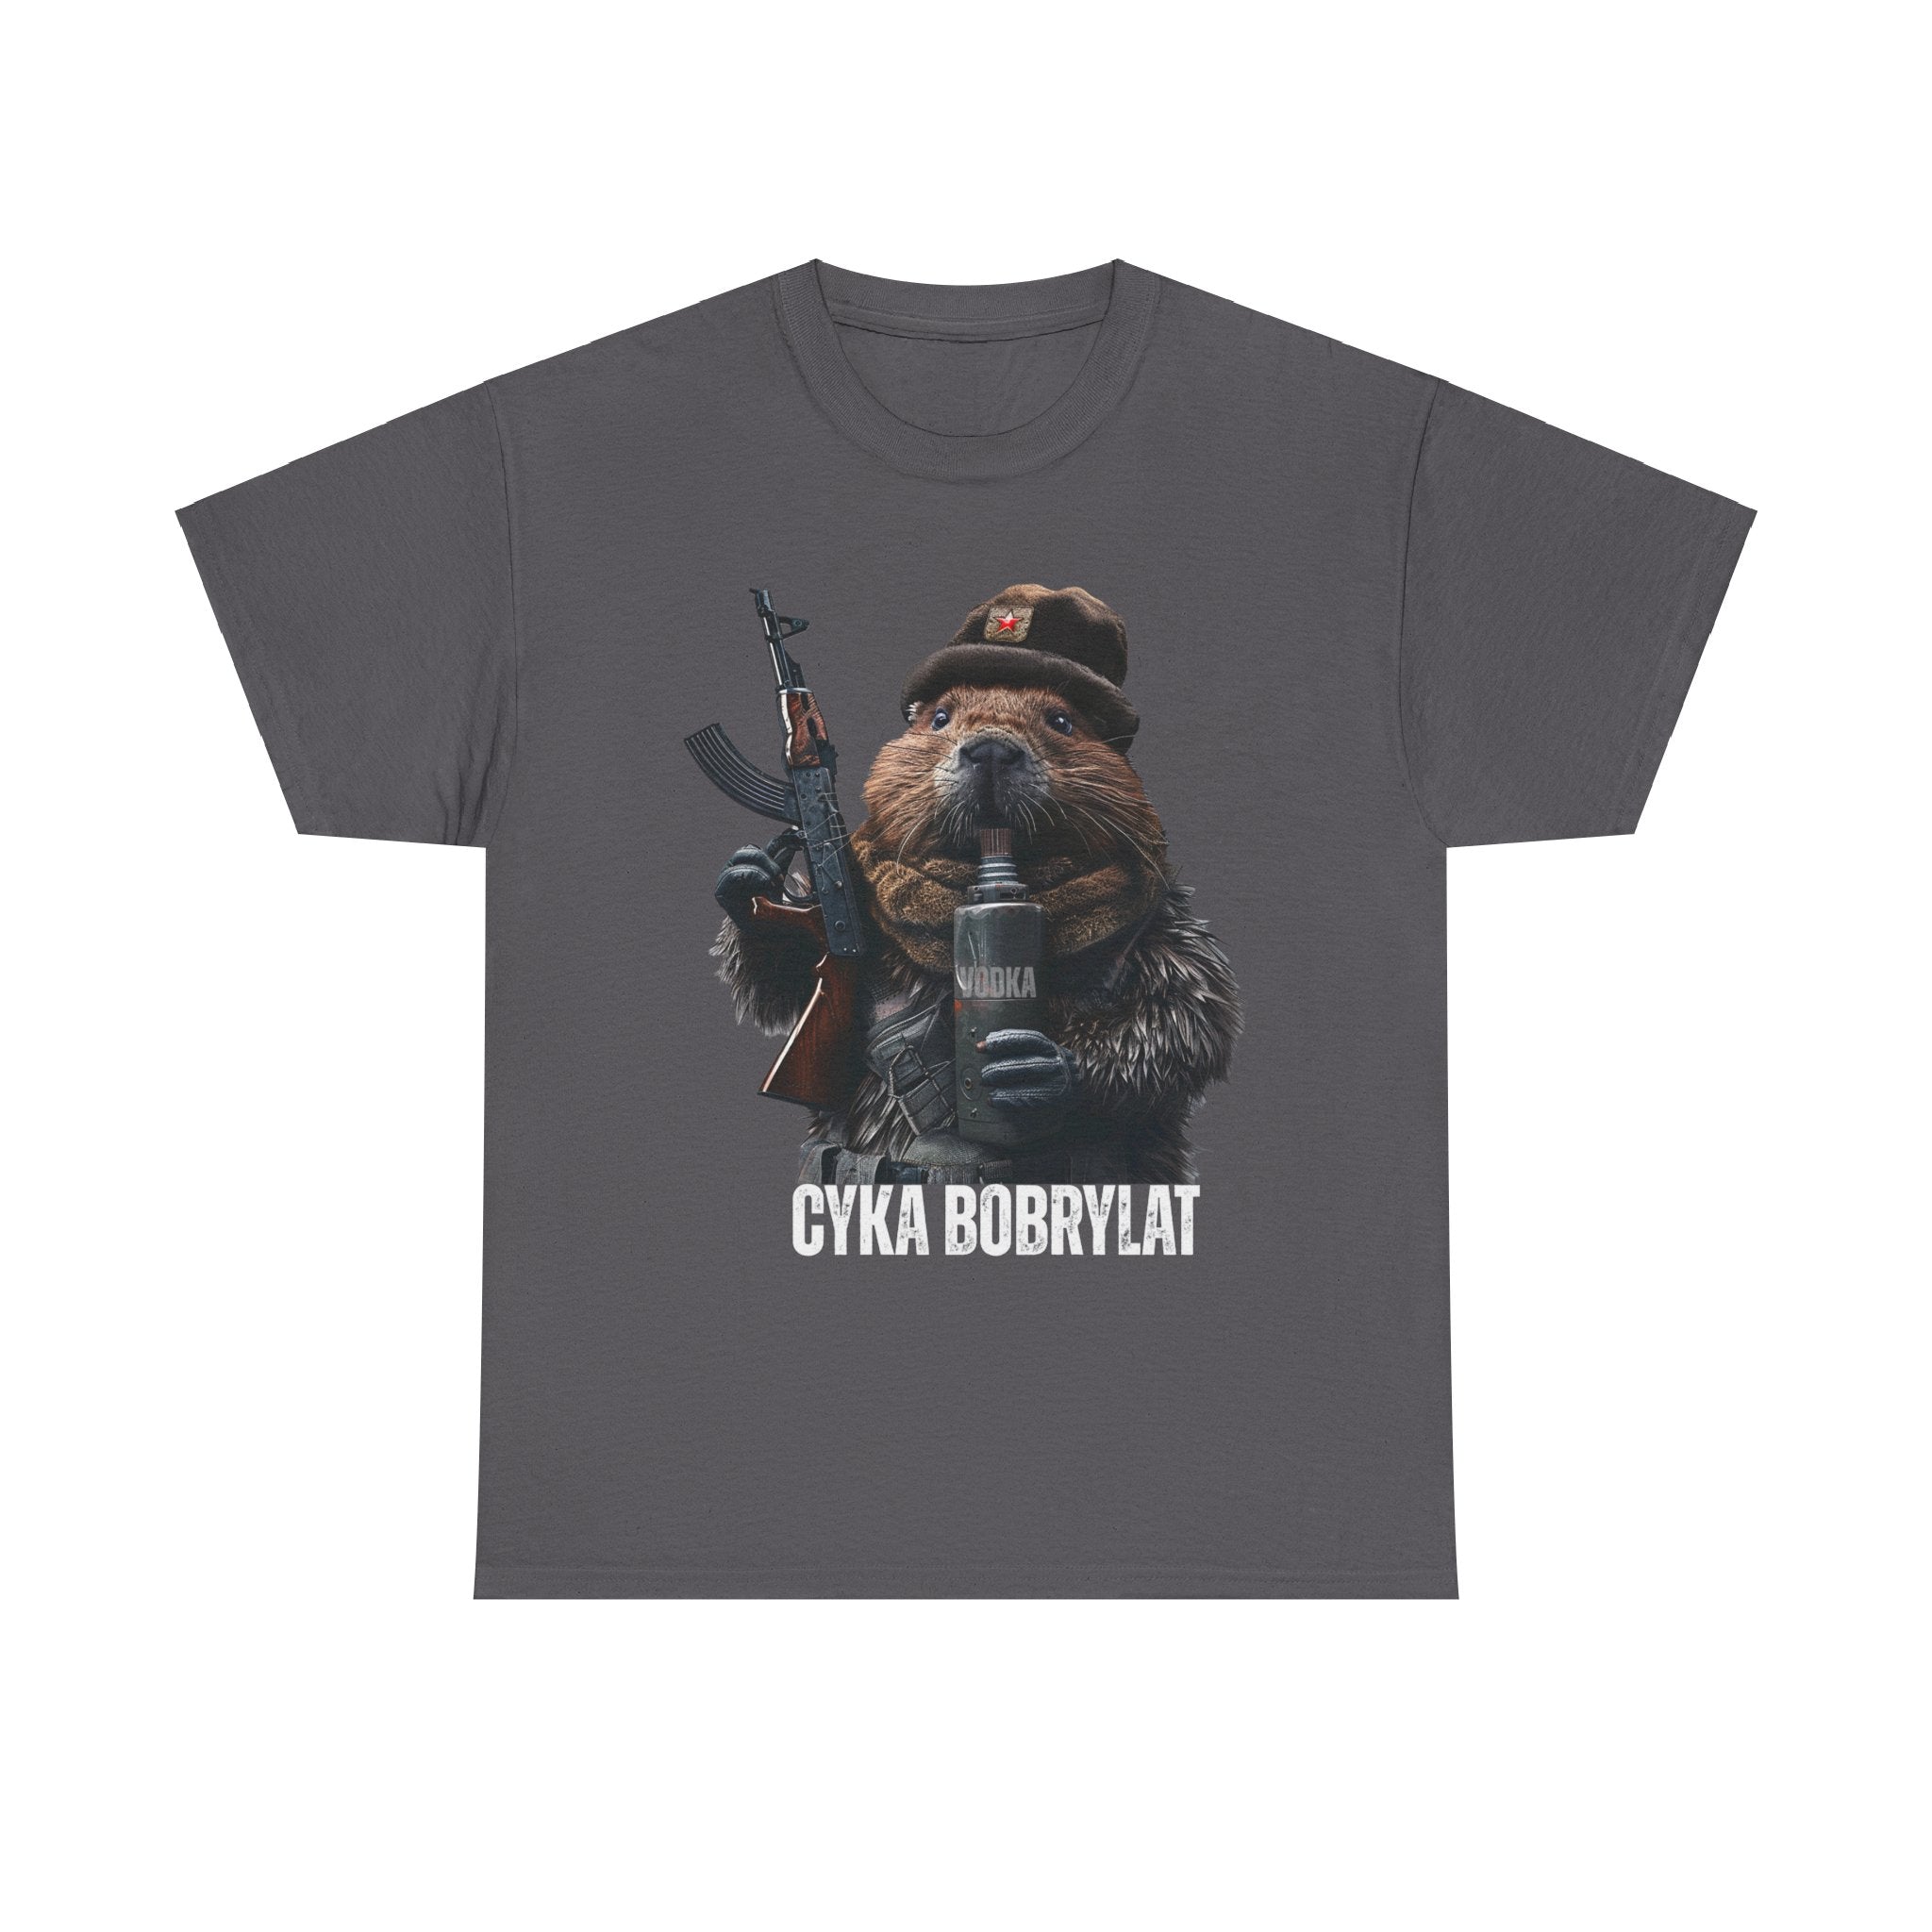 Cyka Bobrlyat - T-shirt